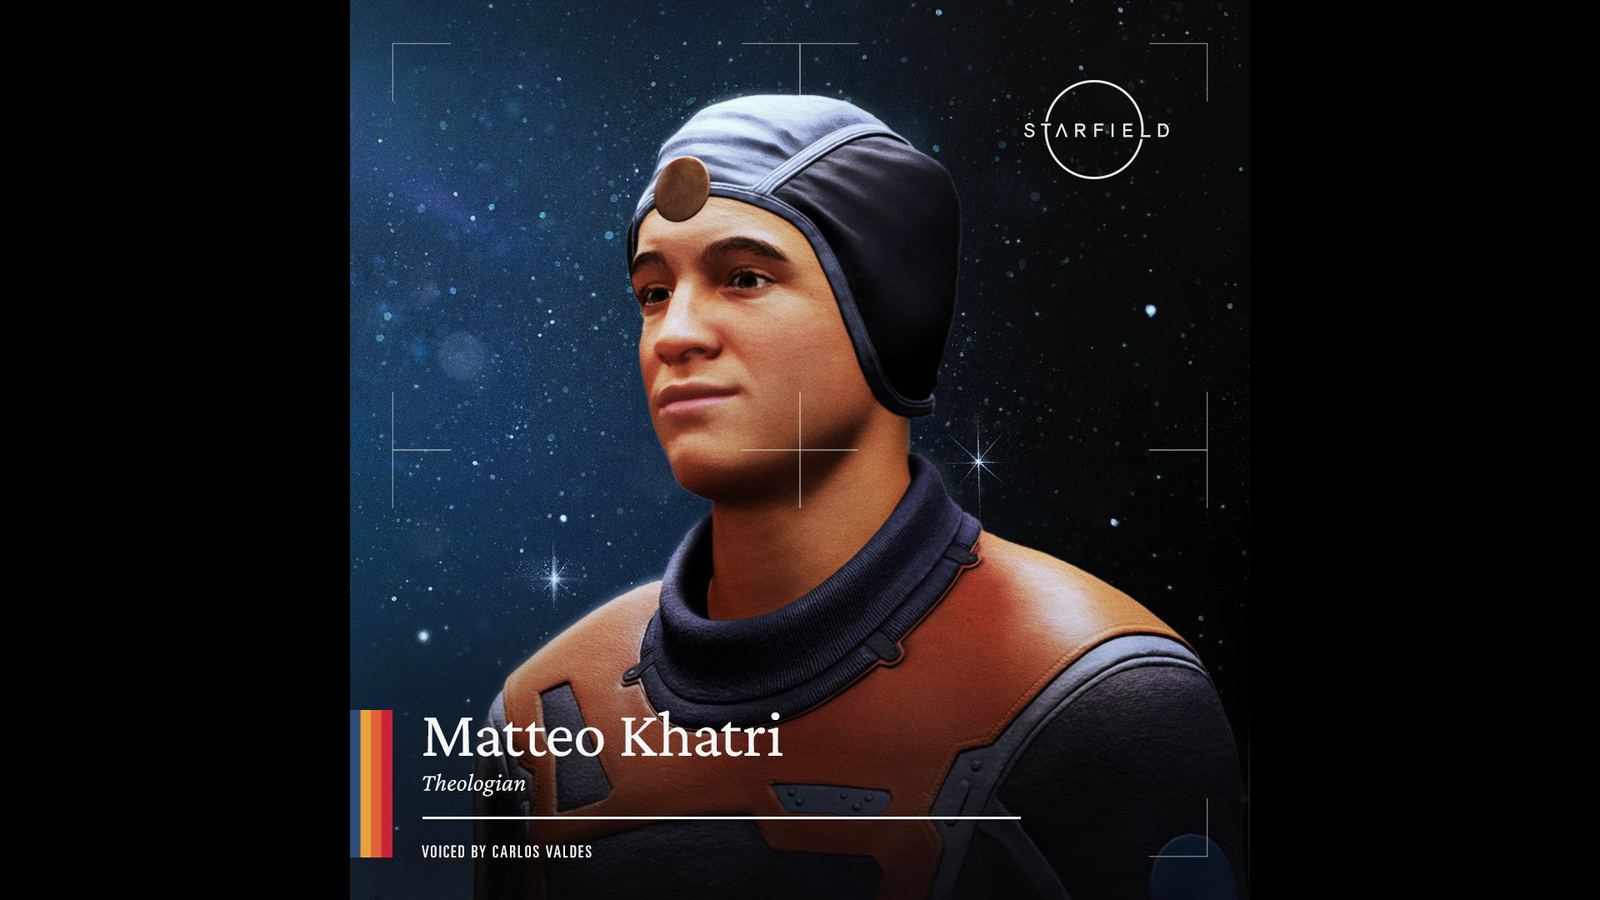 Starfield Matteo Khatri profile shot